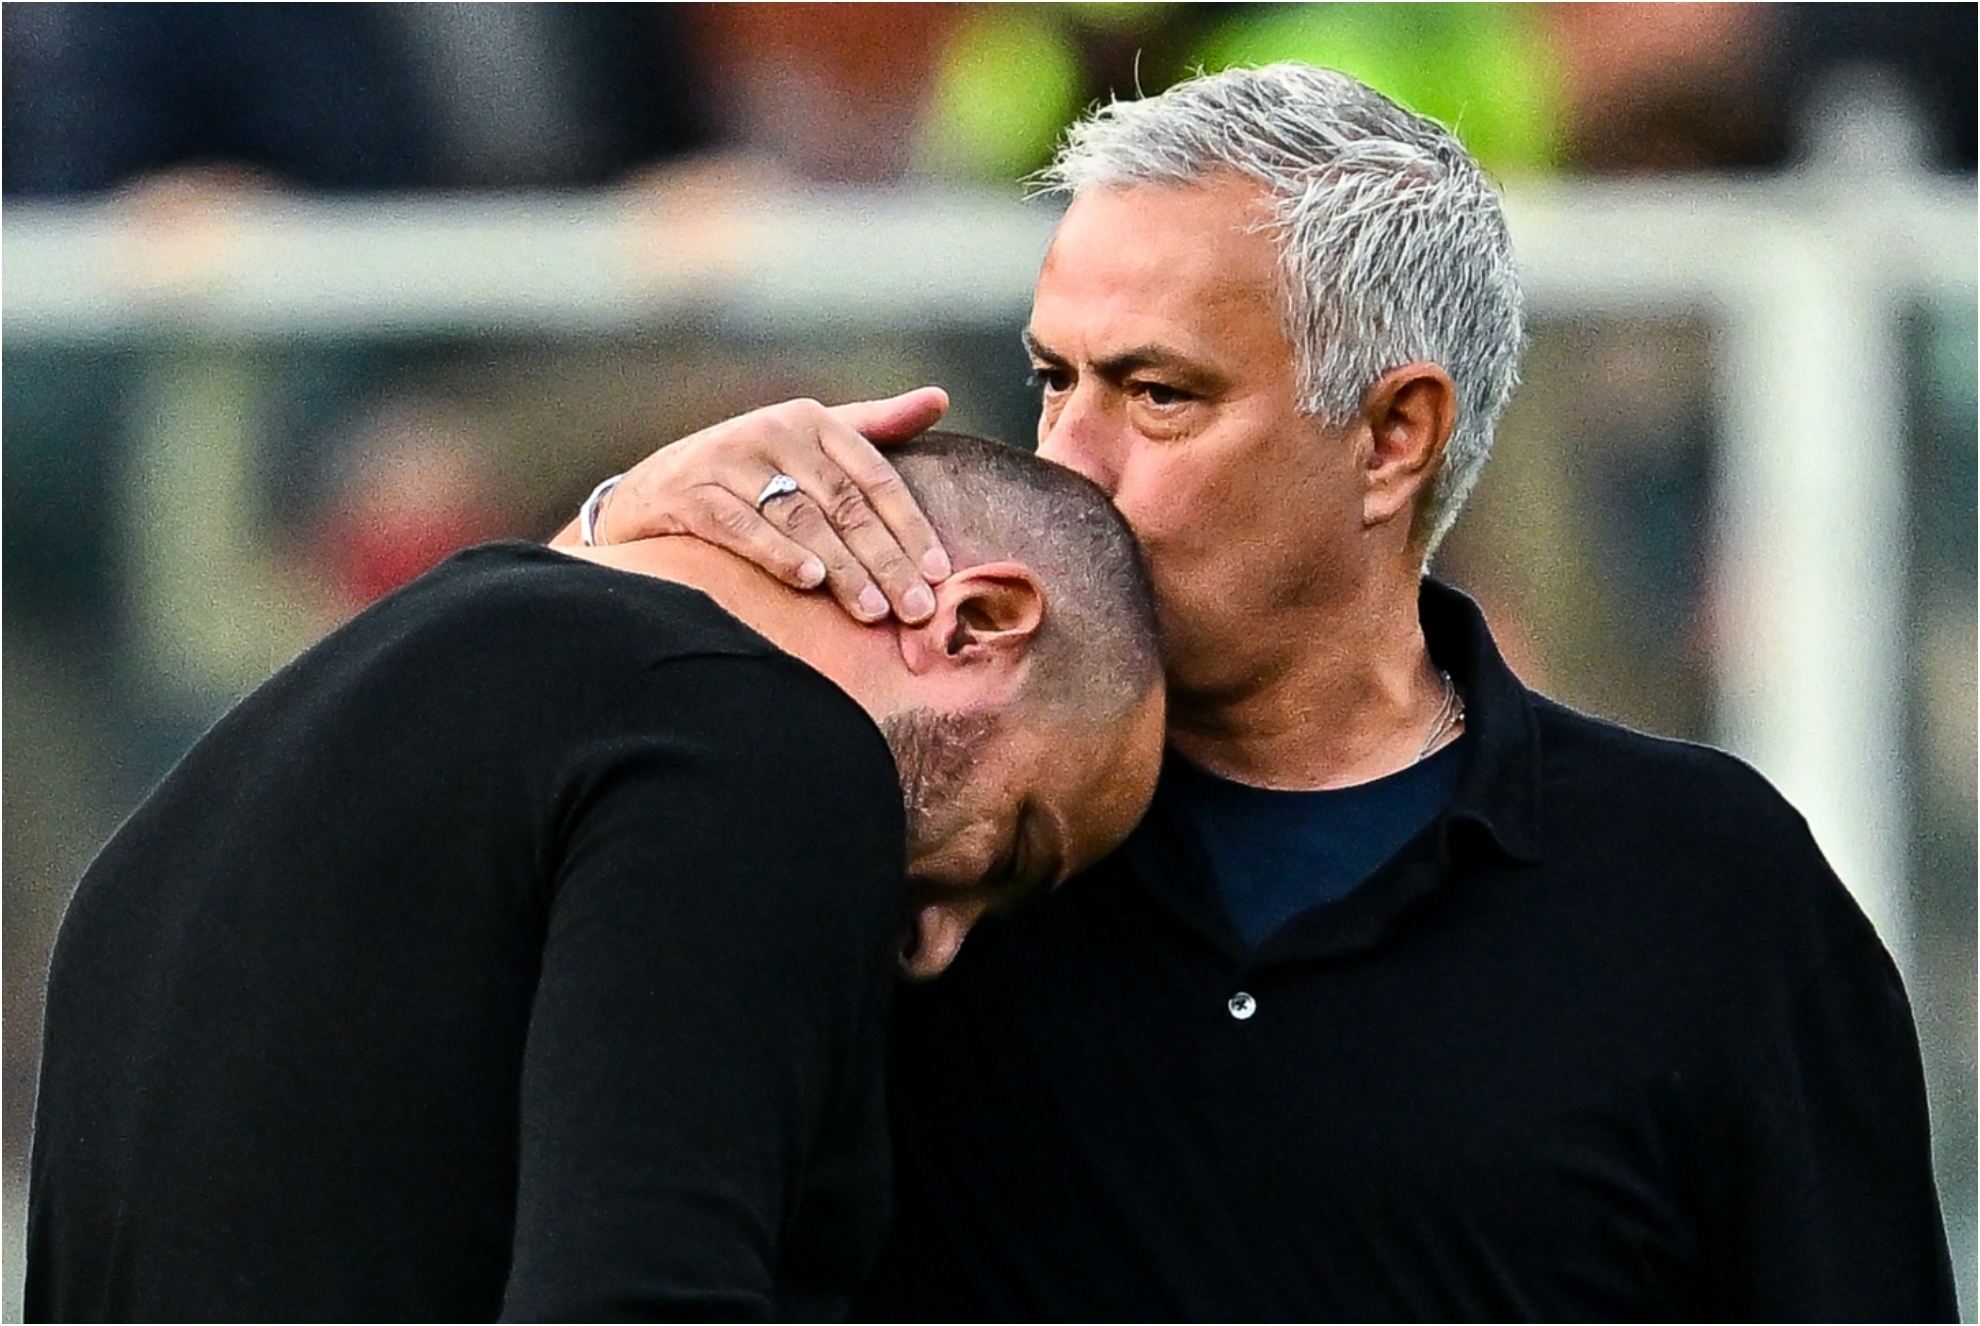 Mourinho le besa en la cabeza a Stankovic antes de que arrancara el duelo entra la Roma y la Sampdoria.